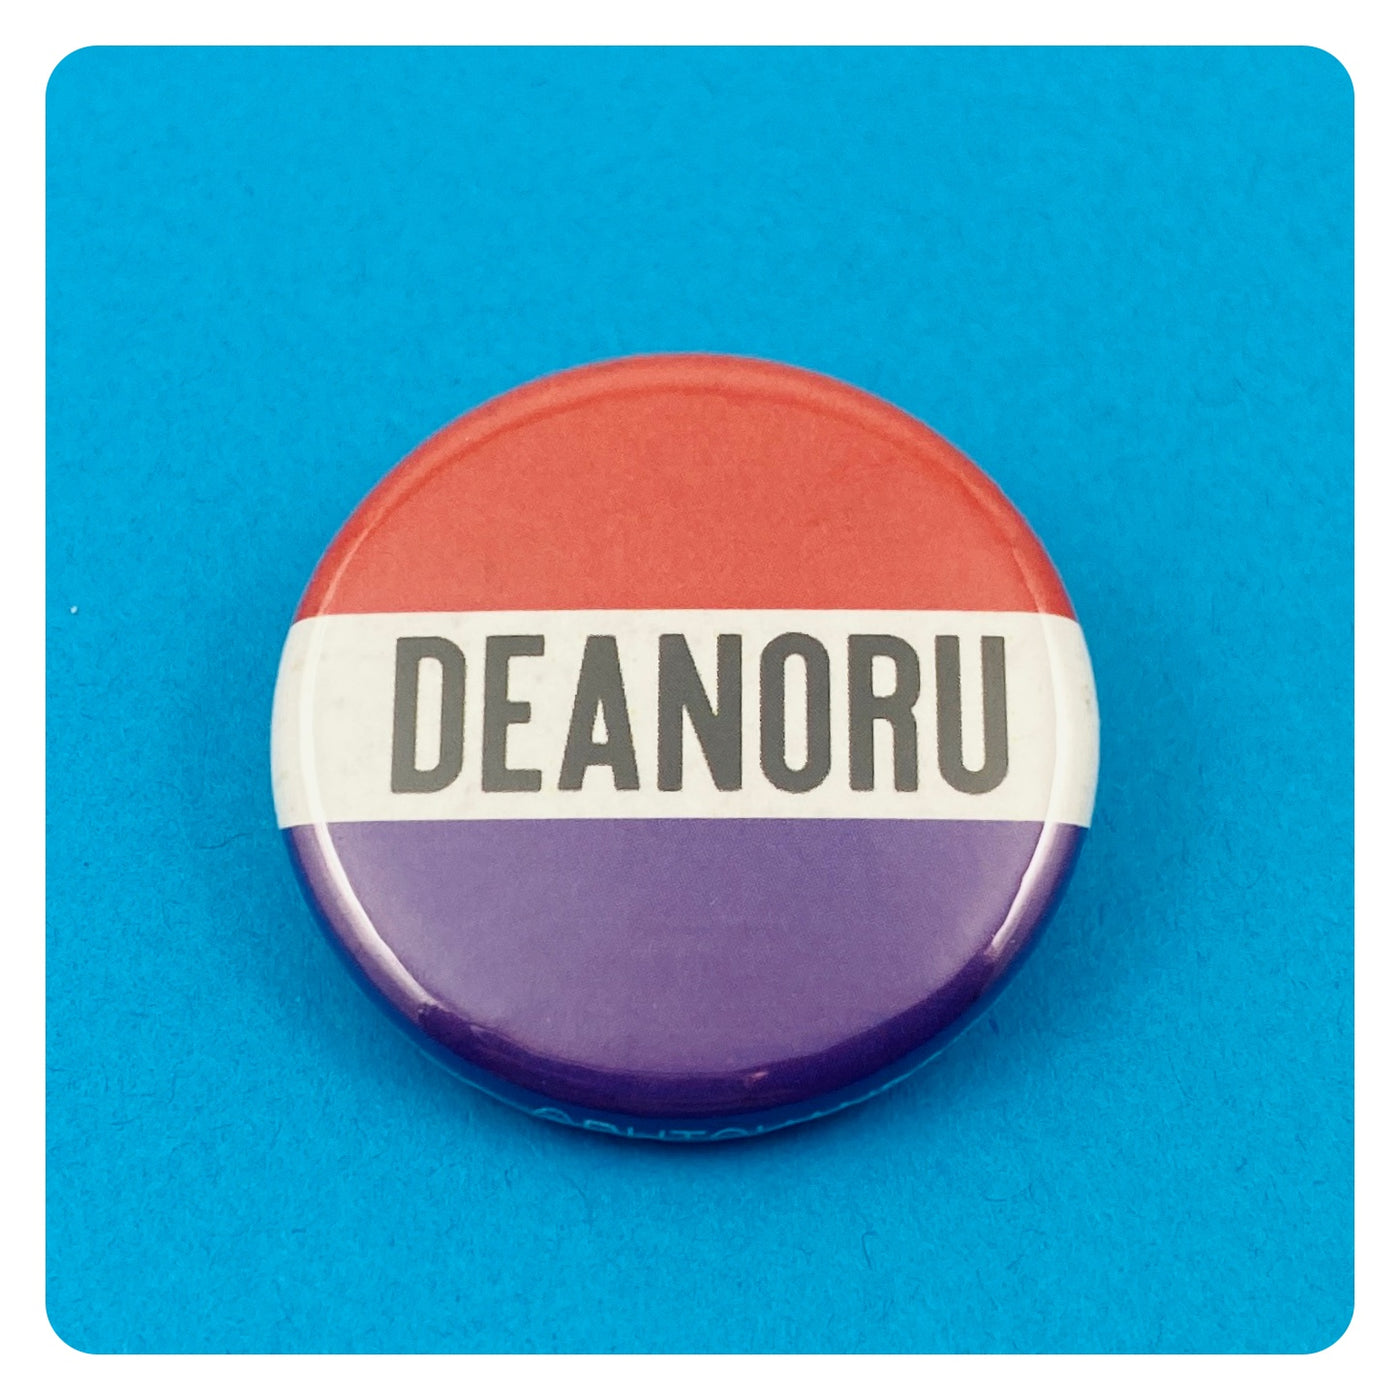 Deanoru Ship Button